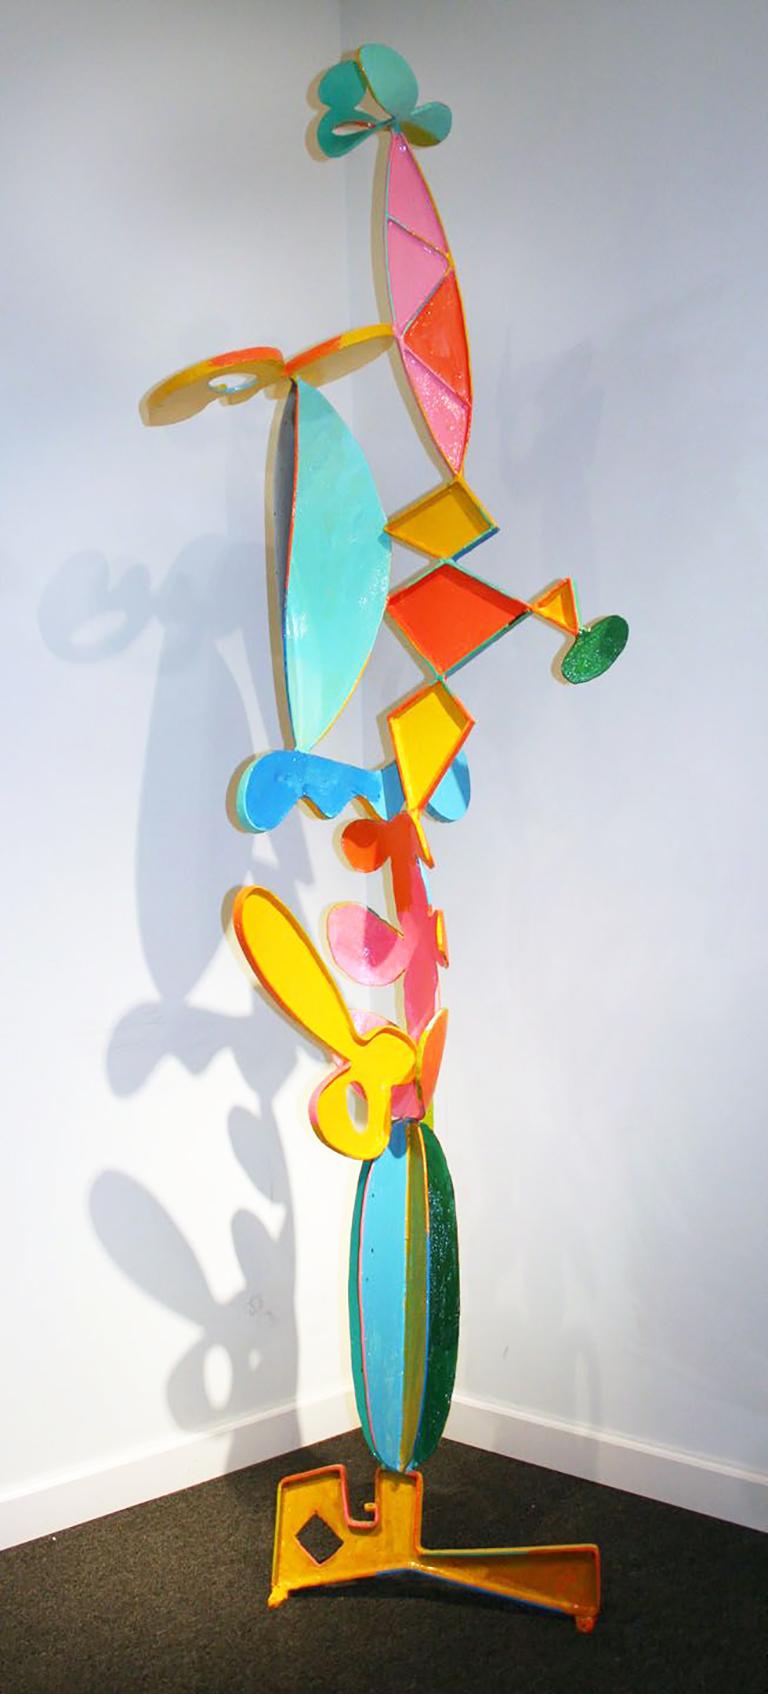 Peter Reginato Abstract Sculpture - New Pastel II